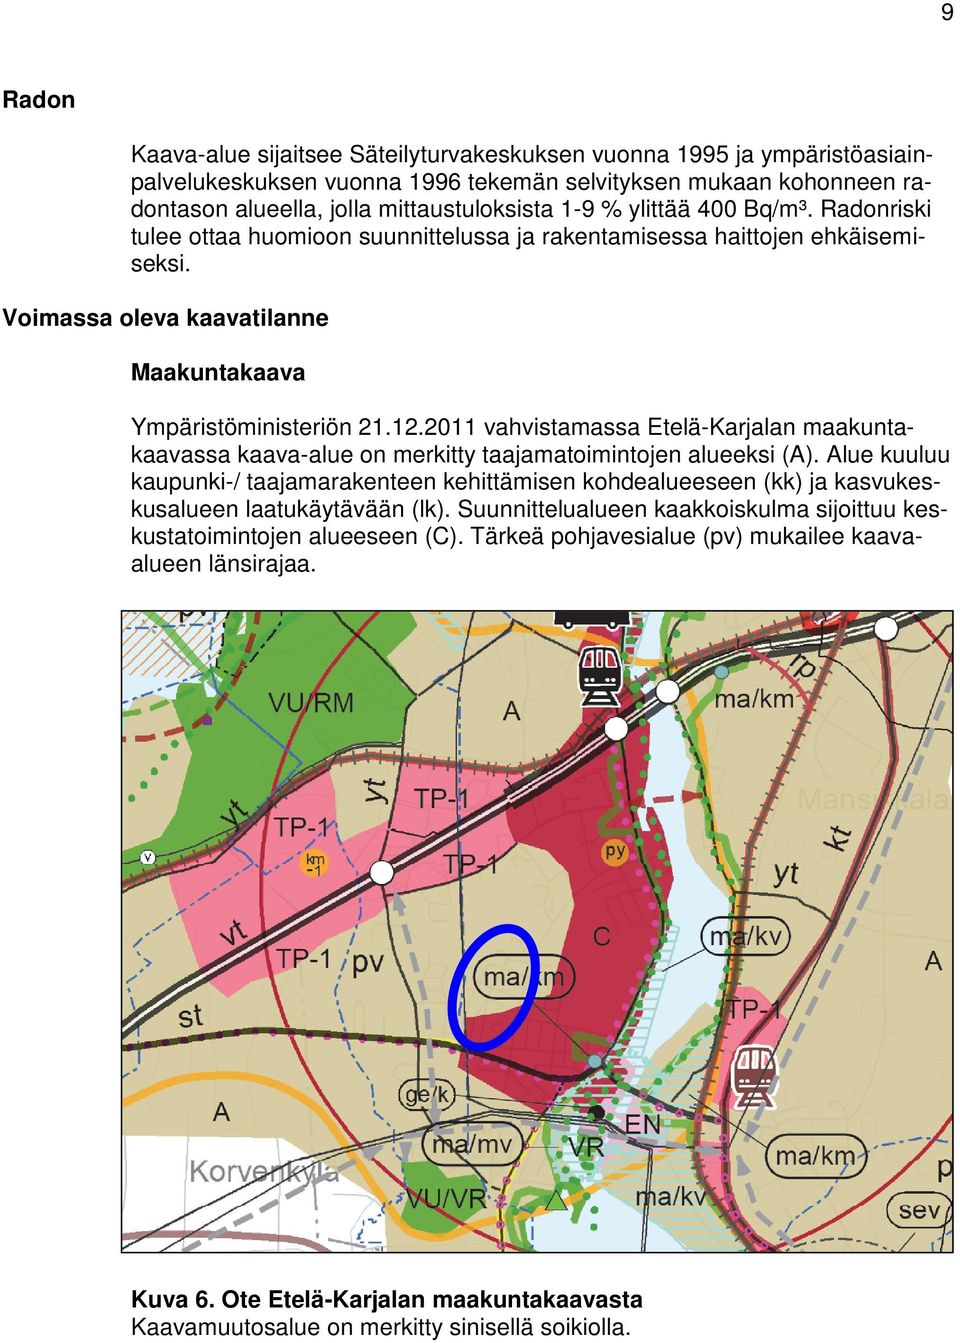 2011 vahvistamassa Etelä-Karjalan maakuntakaavassa kaava-alue on merkitty taajamatoimintojen alueeksi (A).